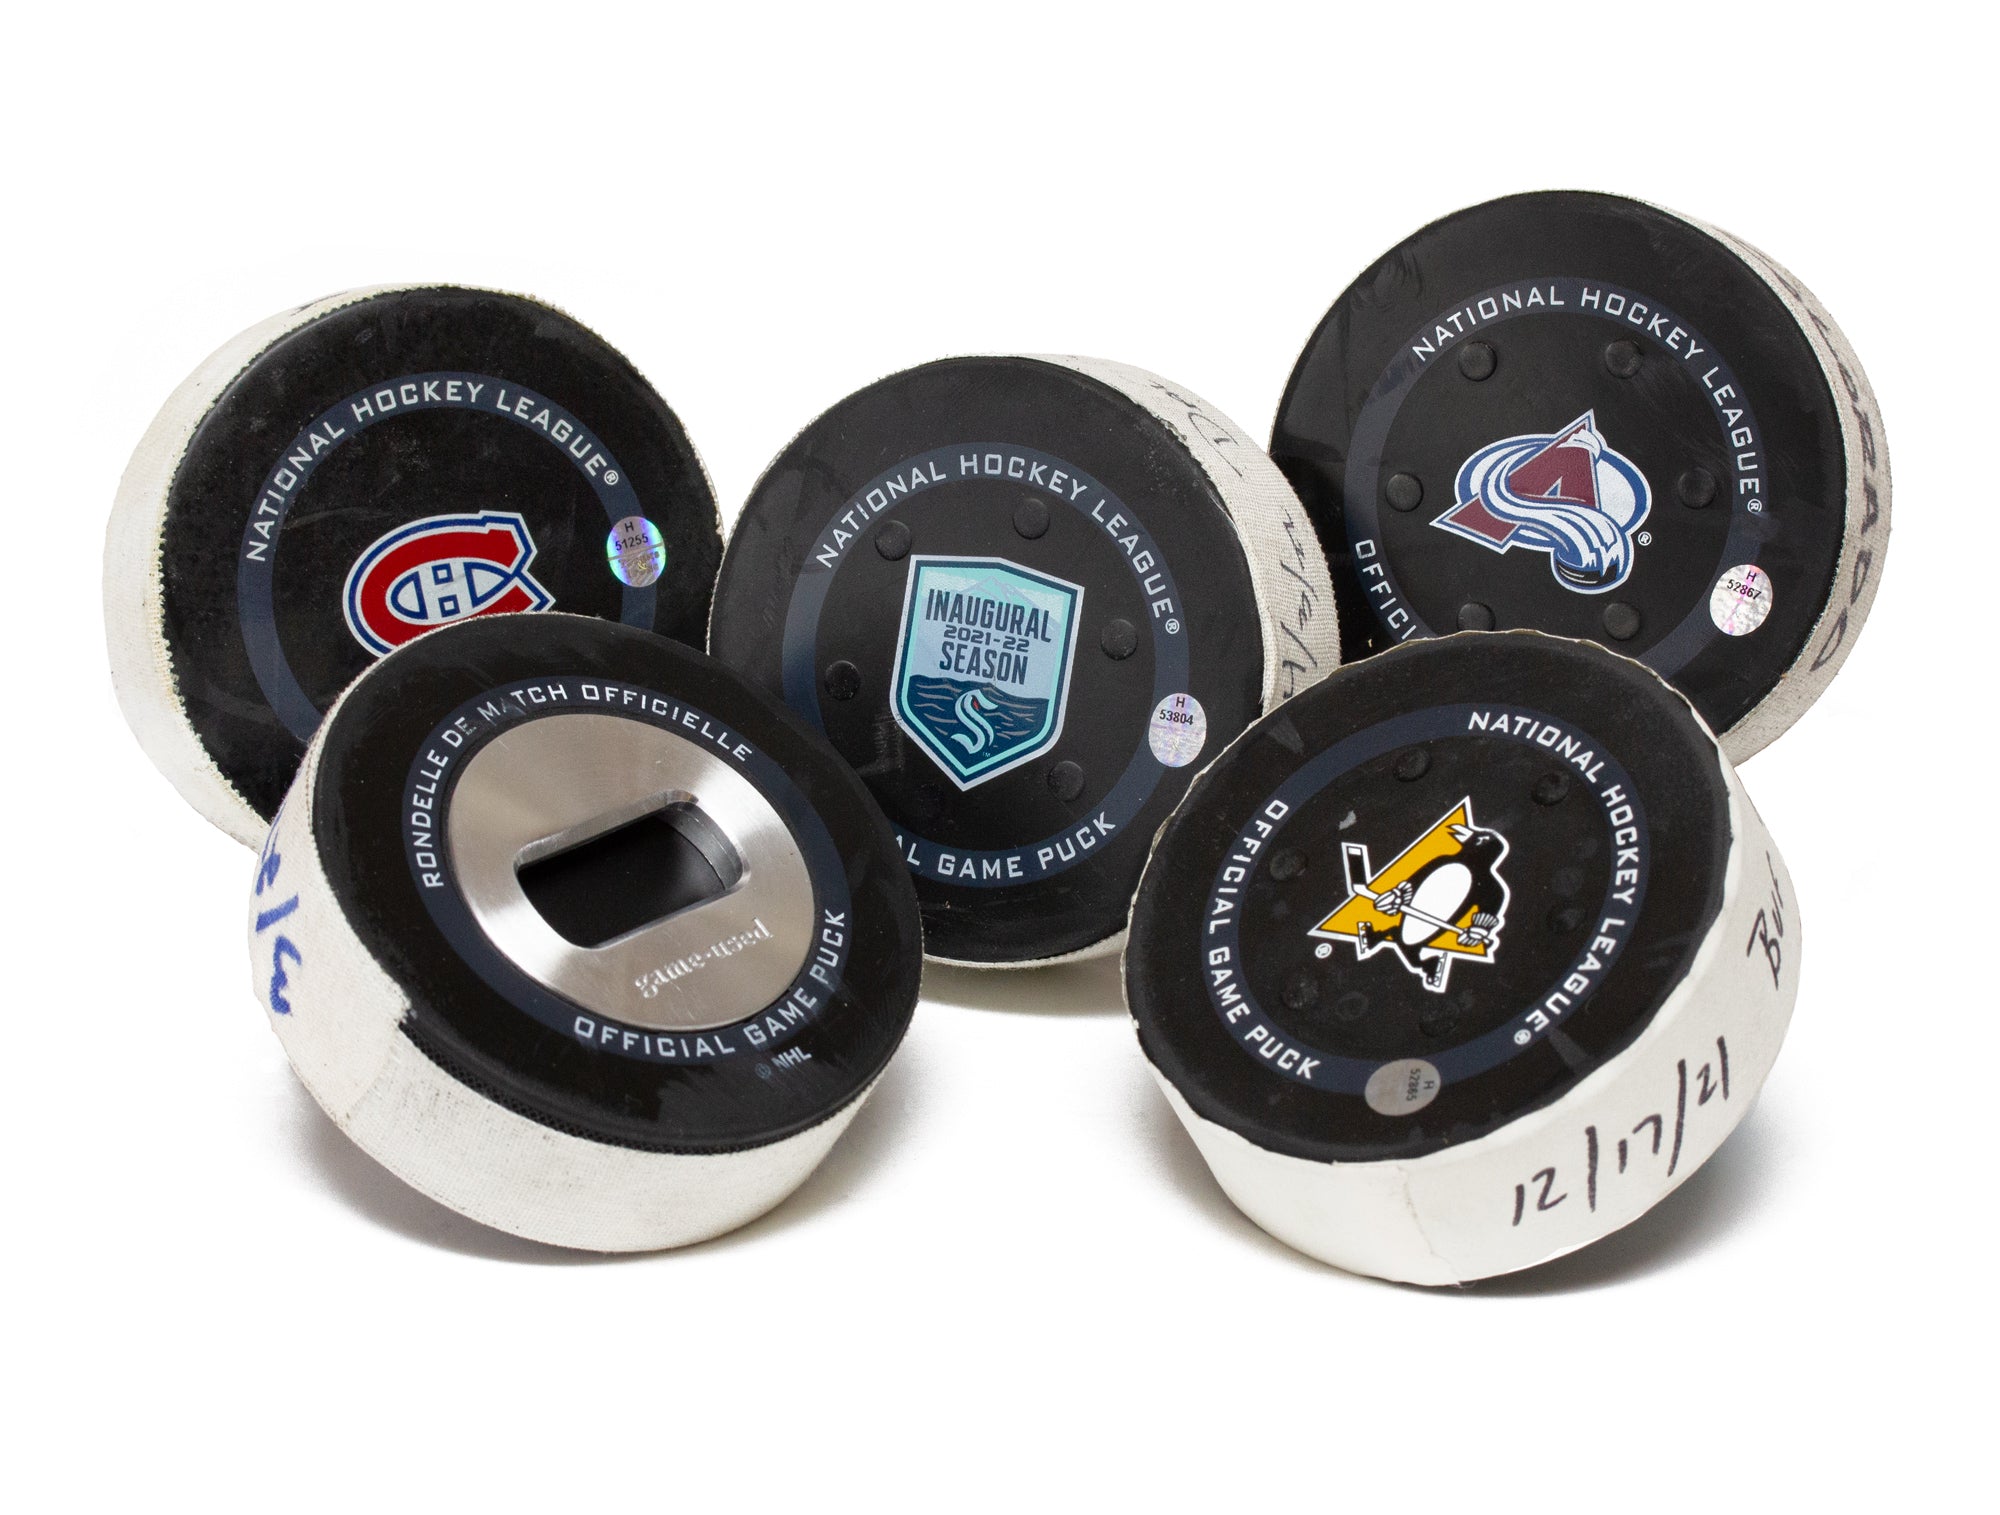 St. Louis Blues Winter Classic NHL Fan Apparel & Souvenirs for